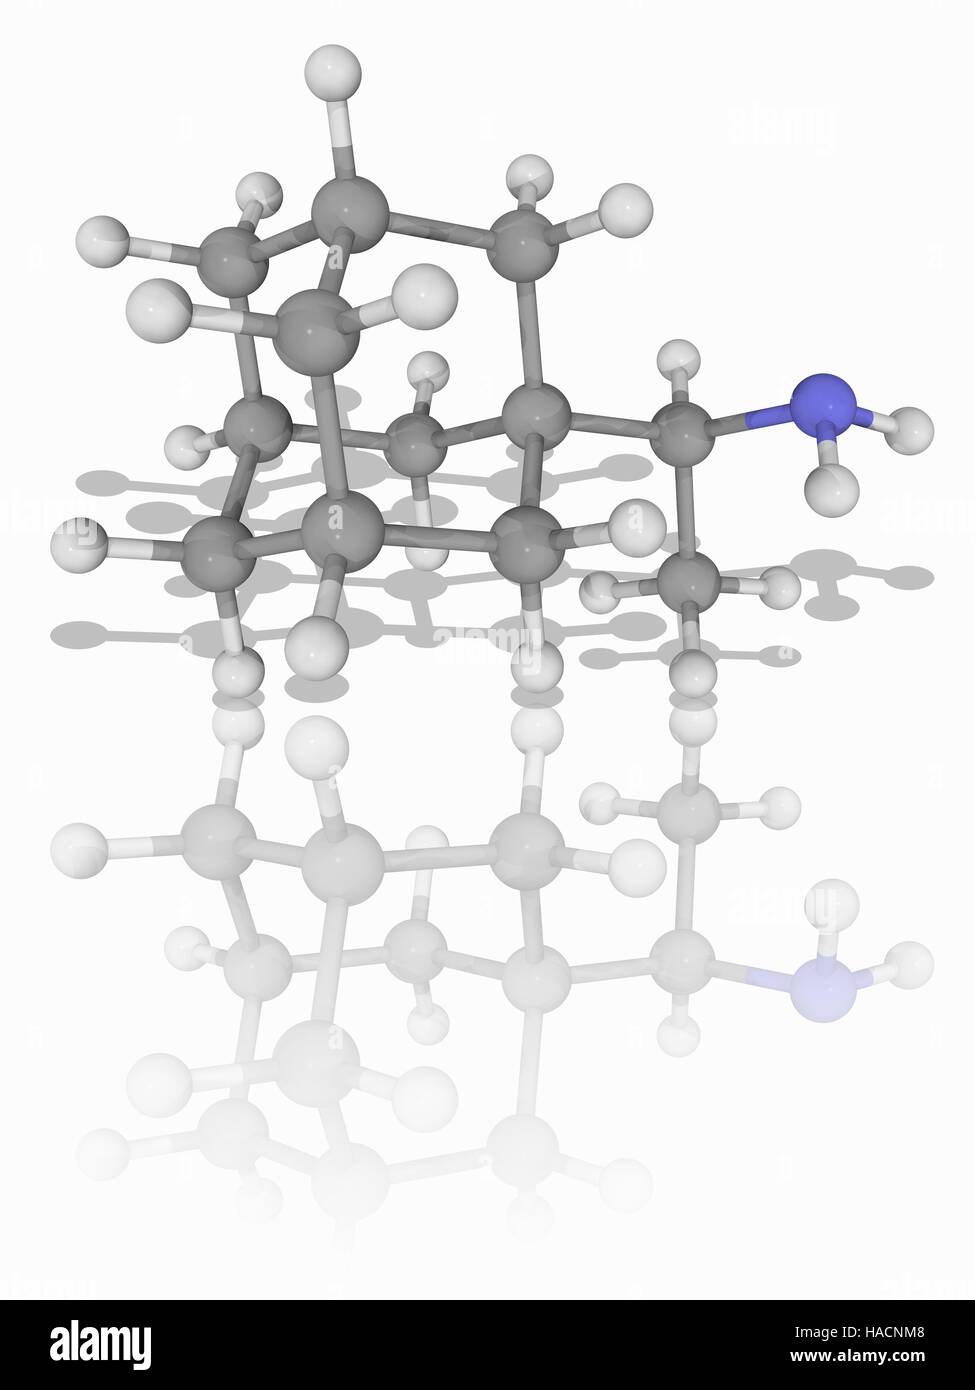 Rimantadine. Molekülmodell antivirale Medikament Rimantadine (C12. H21. (N), als Flumadine vermarktet. Dieses Medikament wird zur Behandlung von Influenza-A-Infektionen. Atome als Kugeln dargestellt werden und sind farblich gekennzeichnet: Kohlenstoff (grau), Wasserstoff (weiß) und Stickstoff (blau). Abbildung. Stockfoto